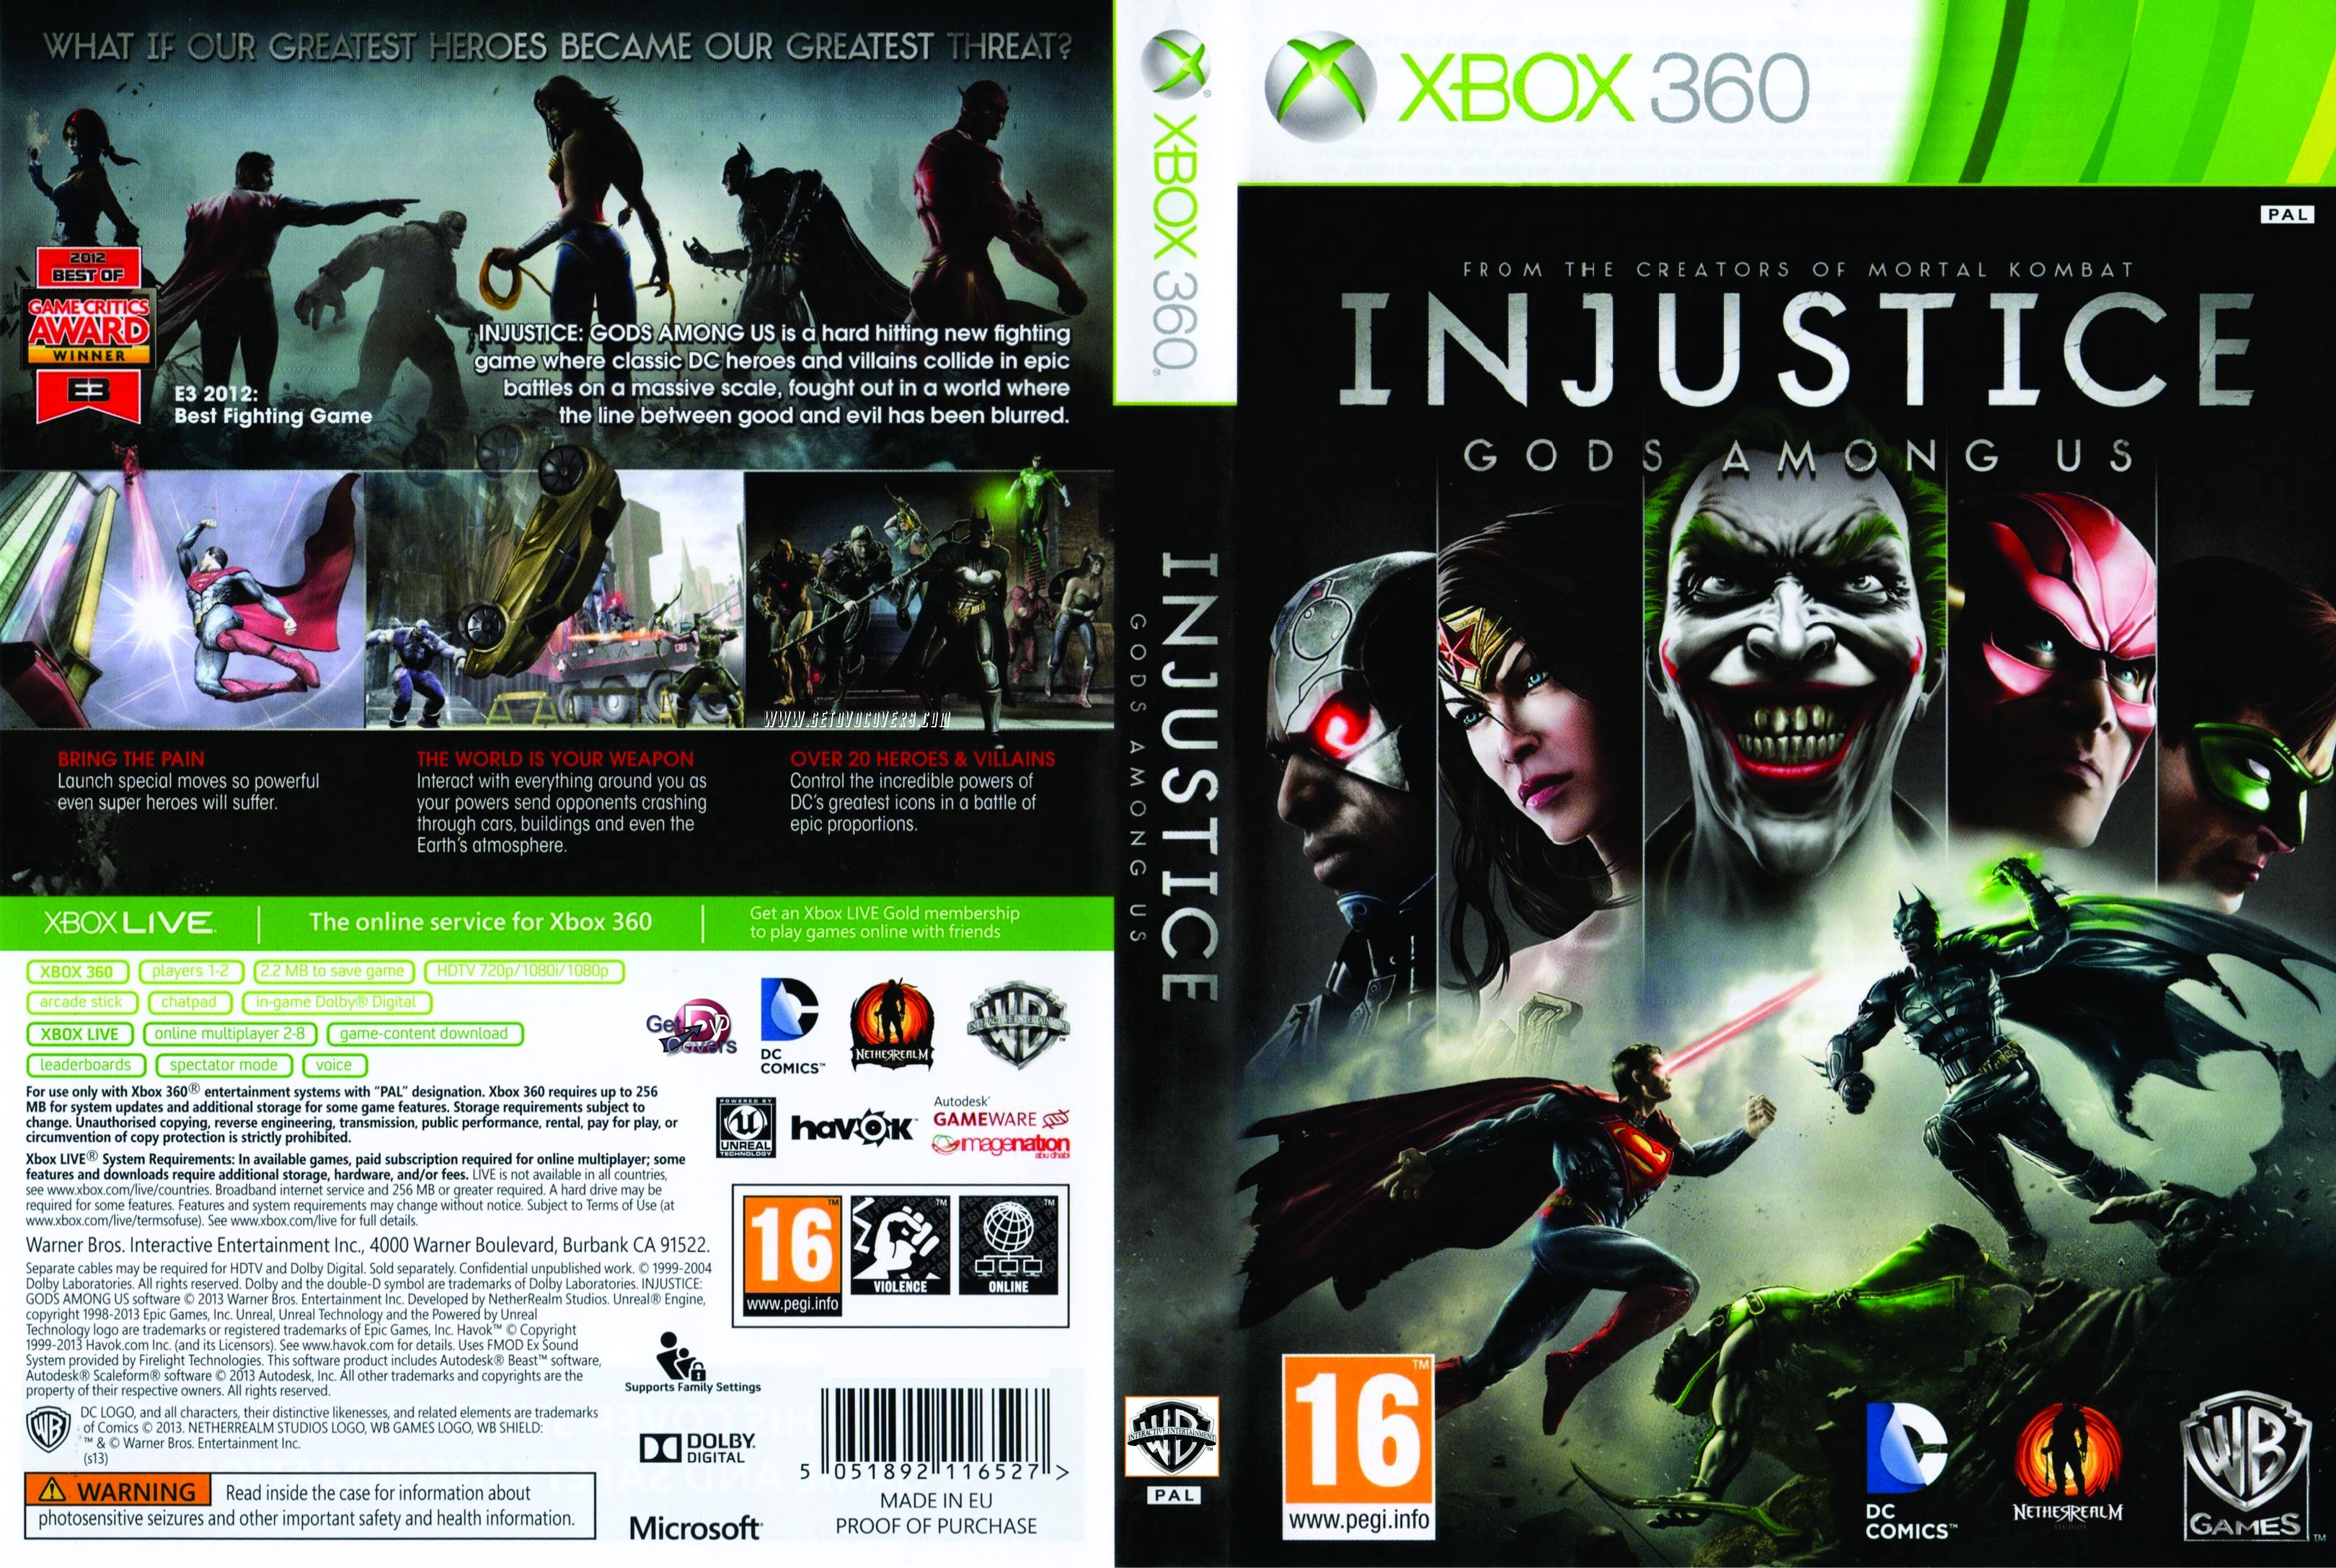 Xbox 360 play. Injustice Xbox 360 обложка. Injustice Xbox 360 диск. Injustice Gods among us Xbox 360. [Xbox 360] Injustice: Gods among us (2013).